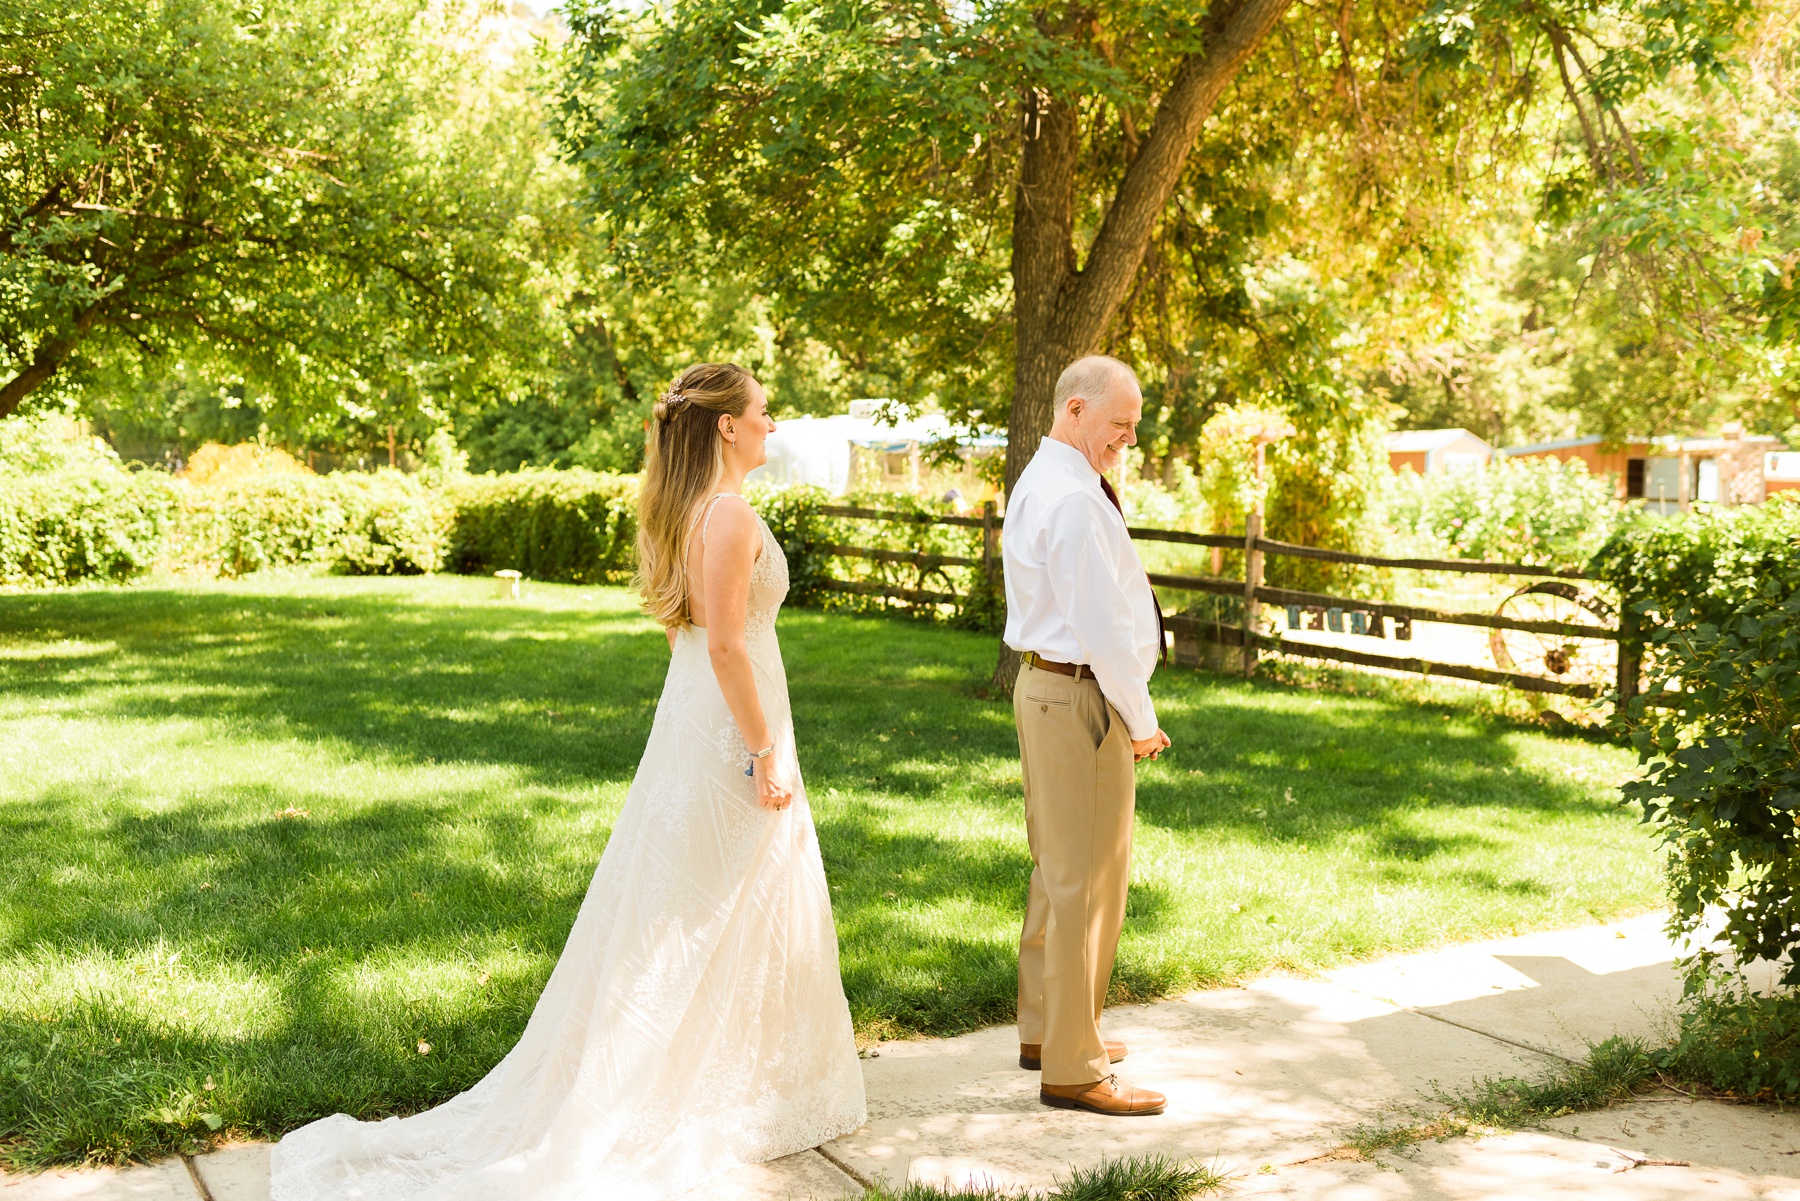 Lyons-Farmette Wedding in Boulder